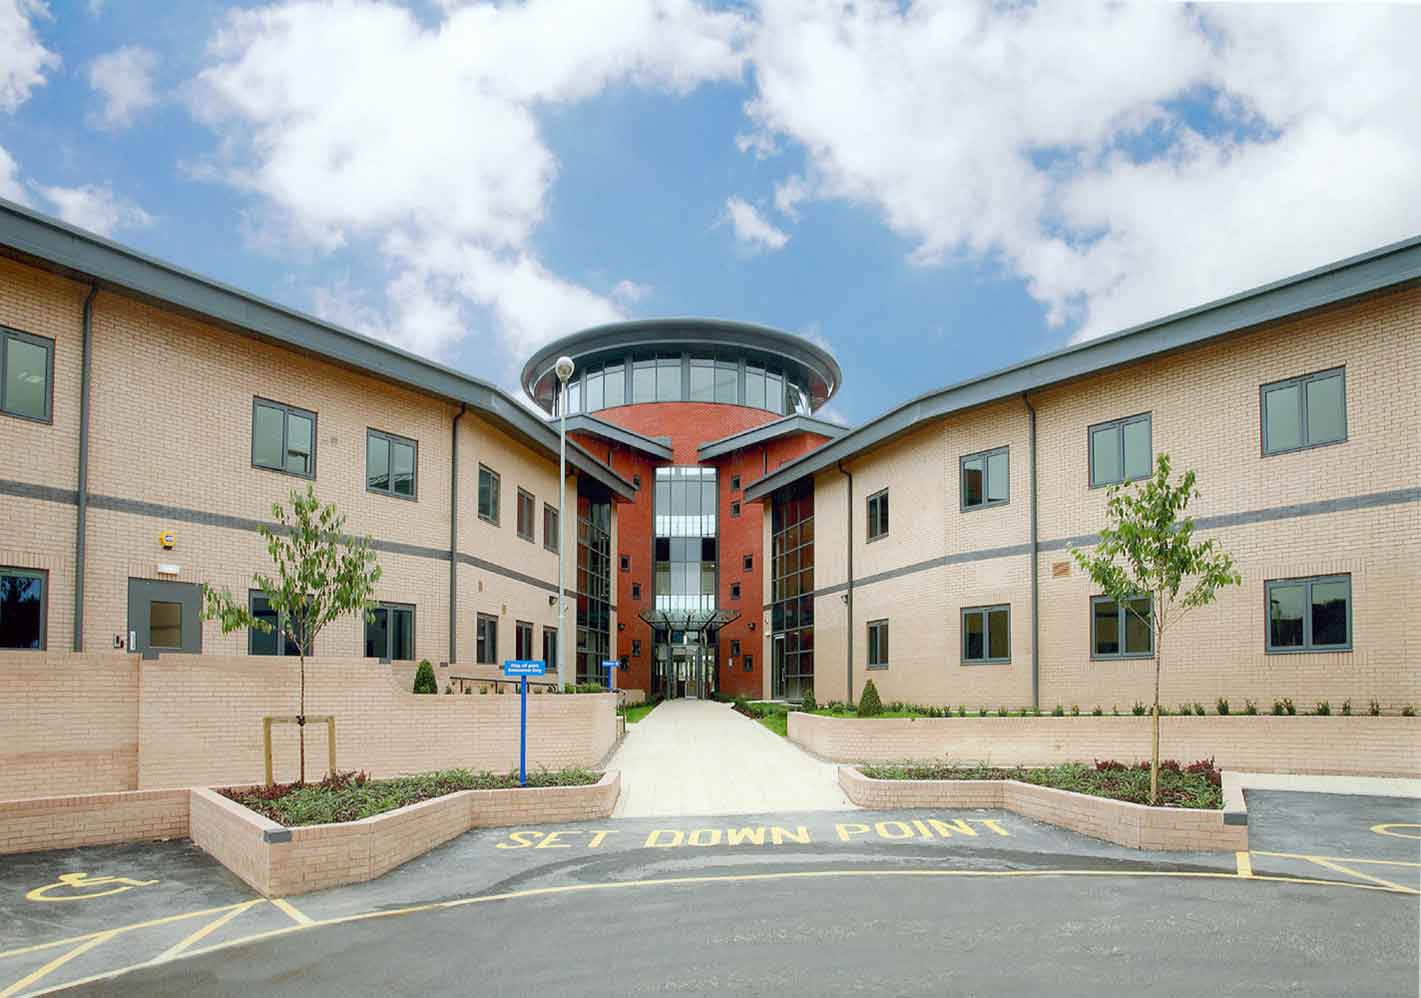 The Merlyn Vaz Health & Social Care Centre Leicester